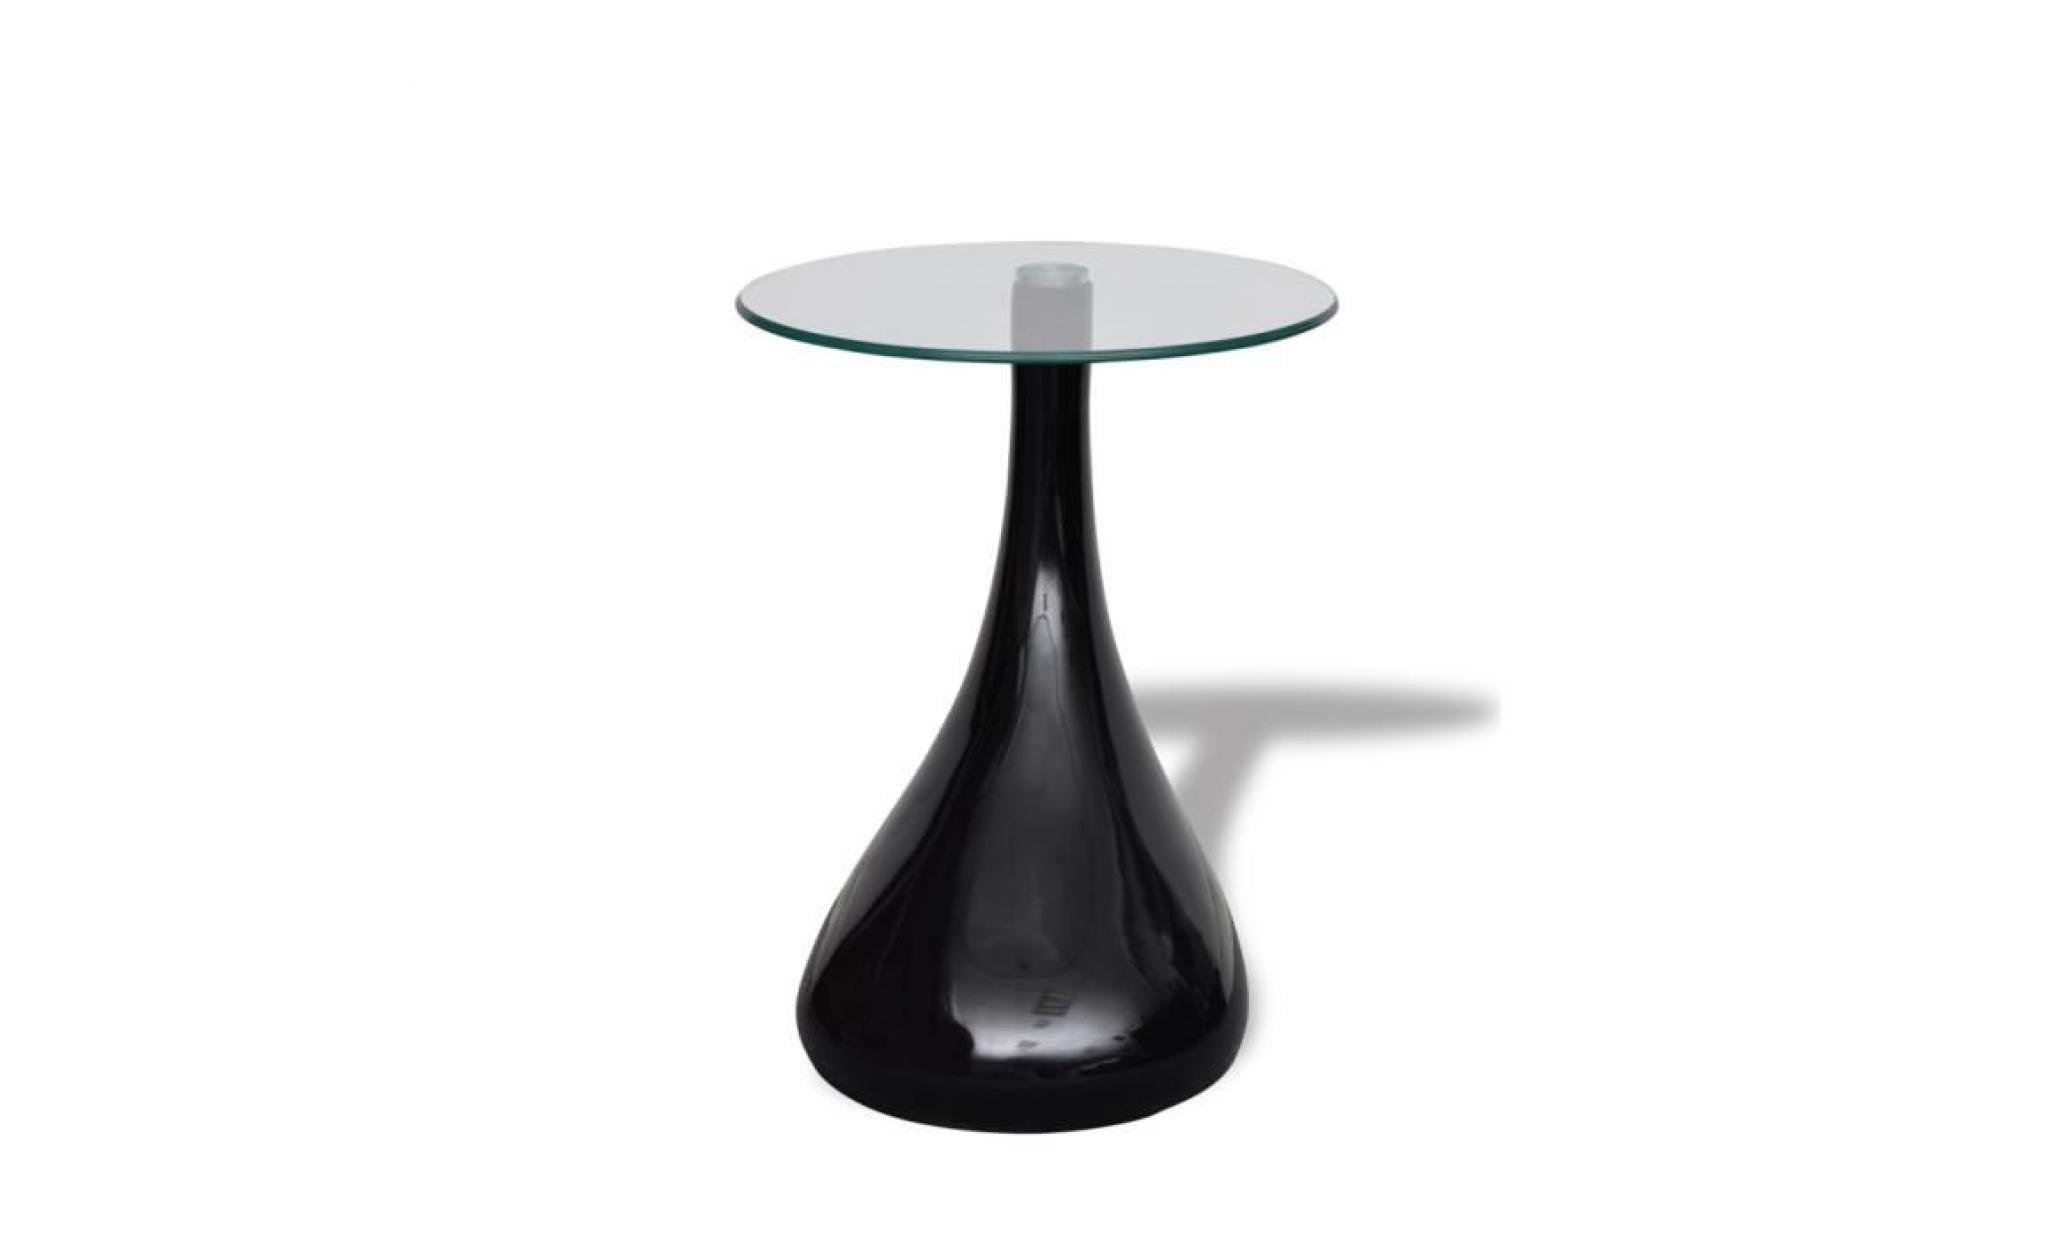 2pcs table basse de salon laquée design en forme d'une goutte d'eau noire pas cher